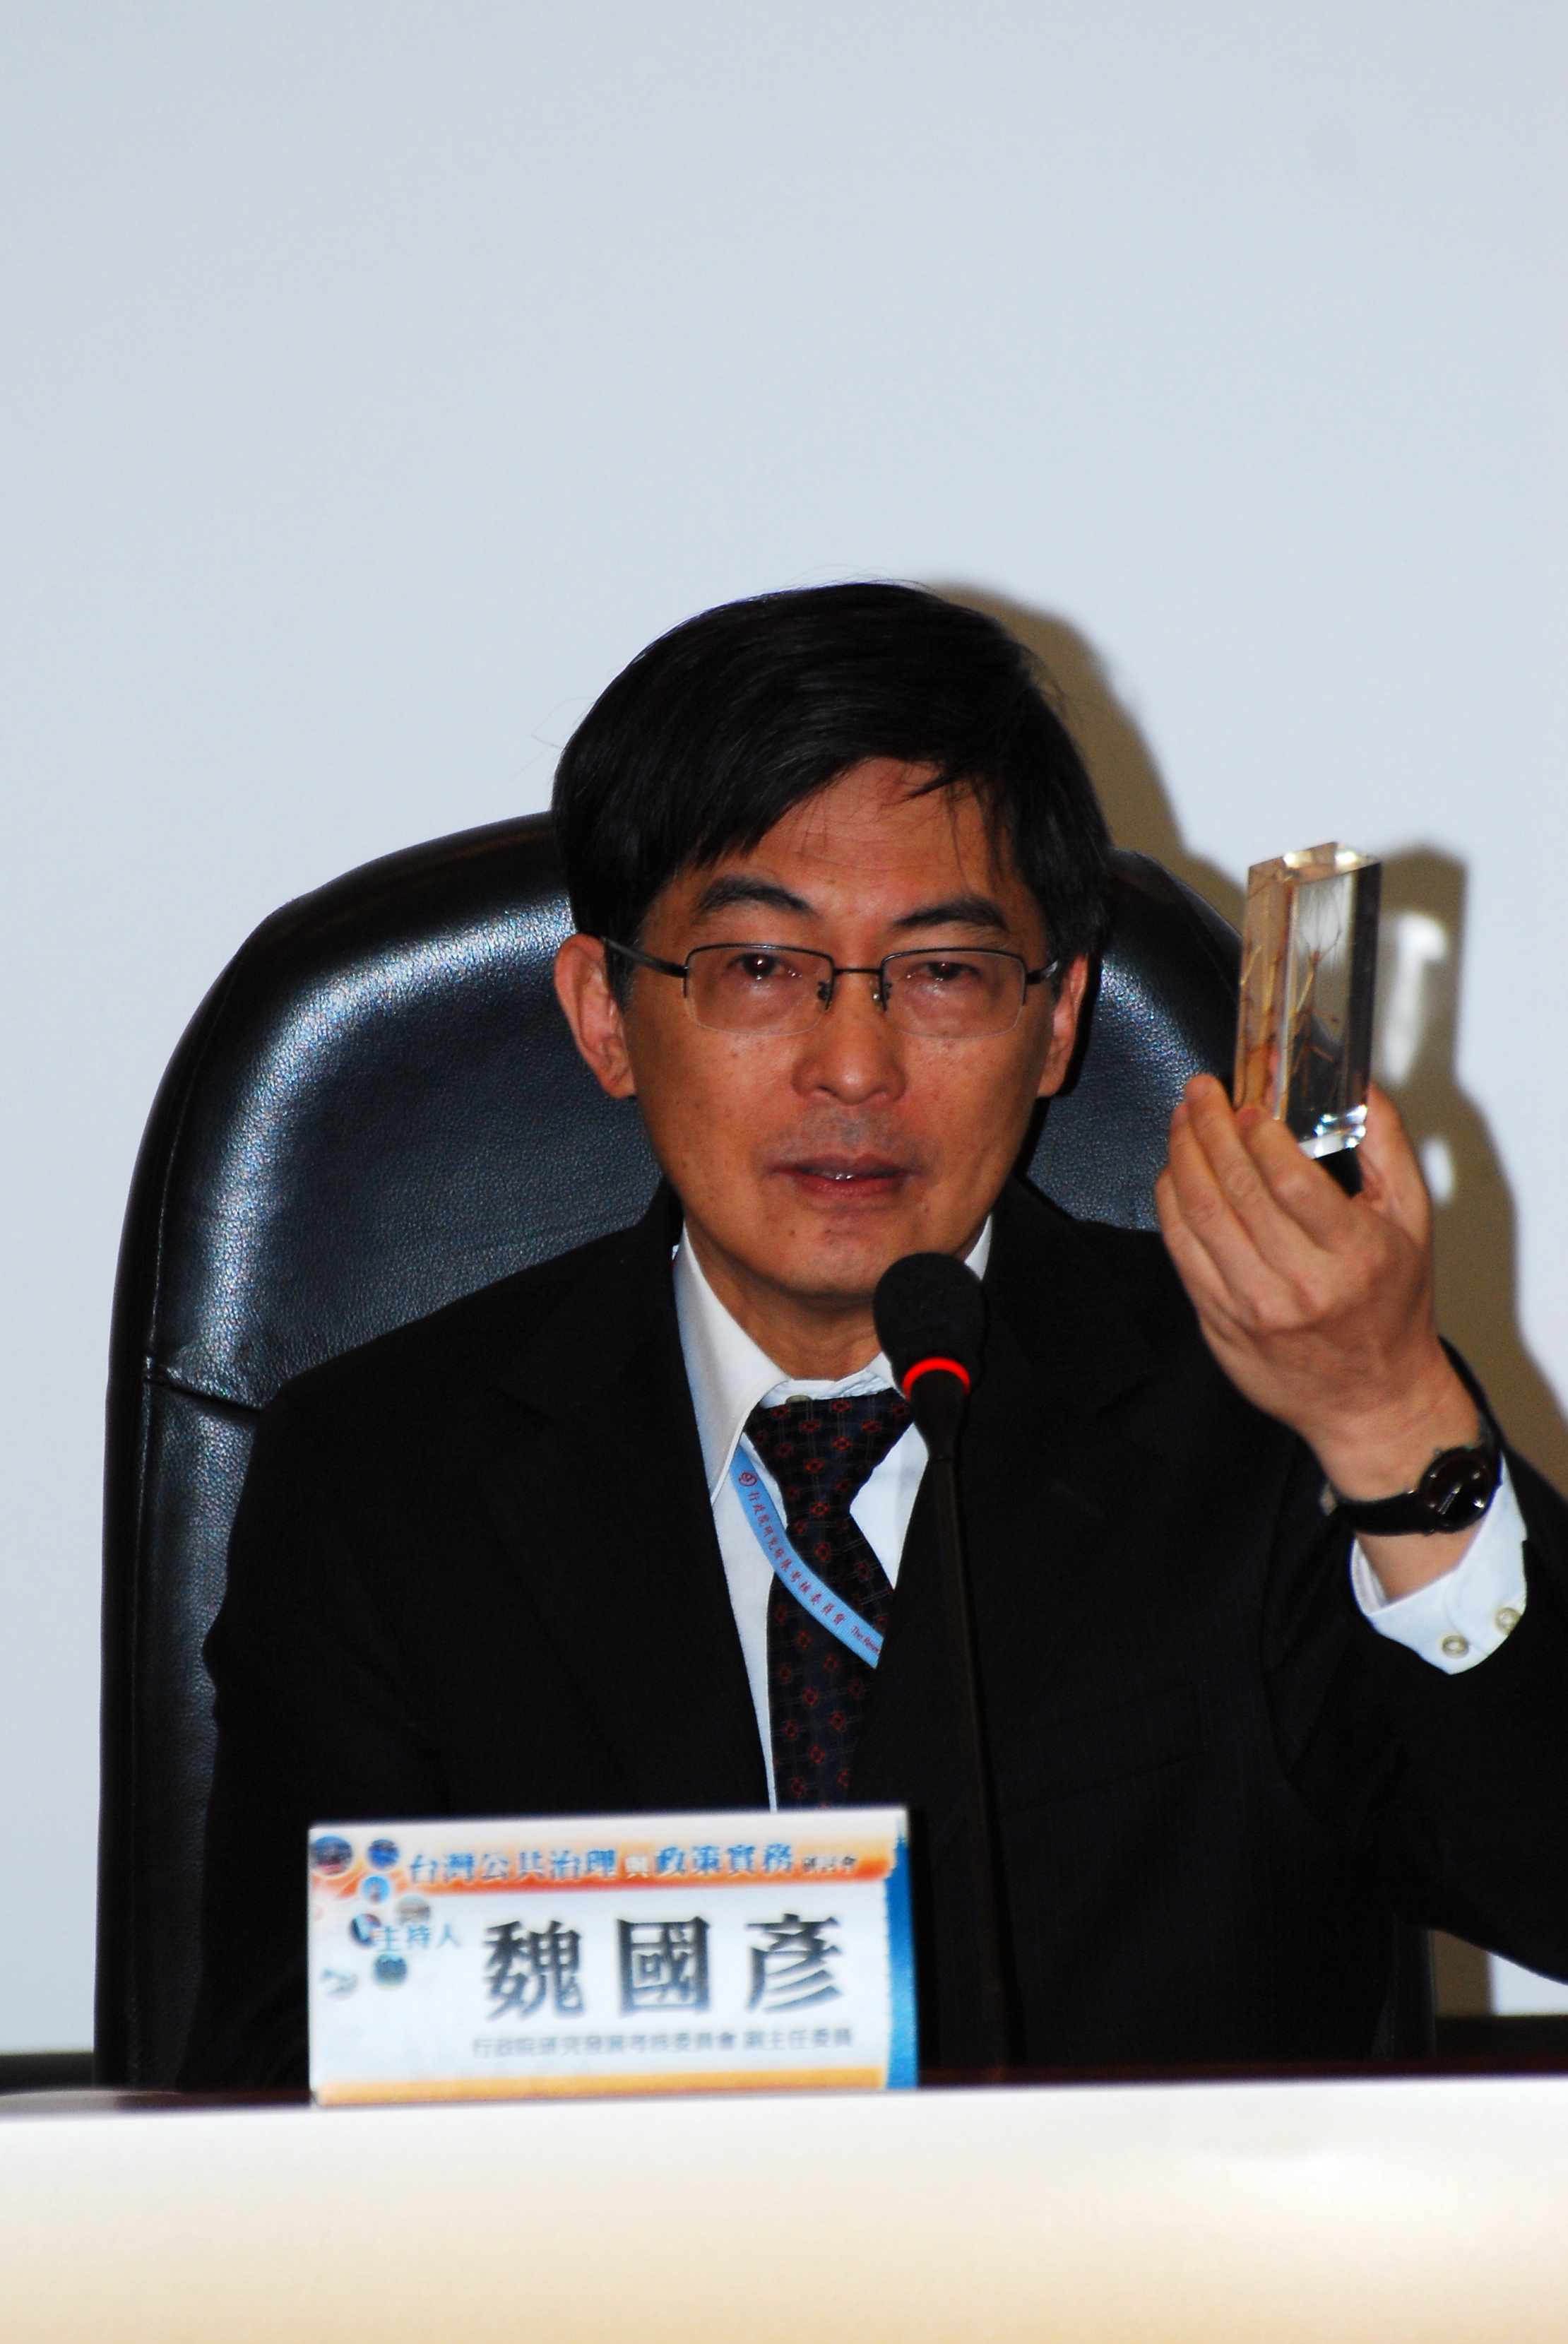 1.魏副主委國彥主持第一場次「政府透明化之分析架構與評估」